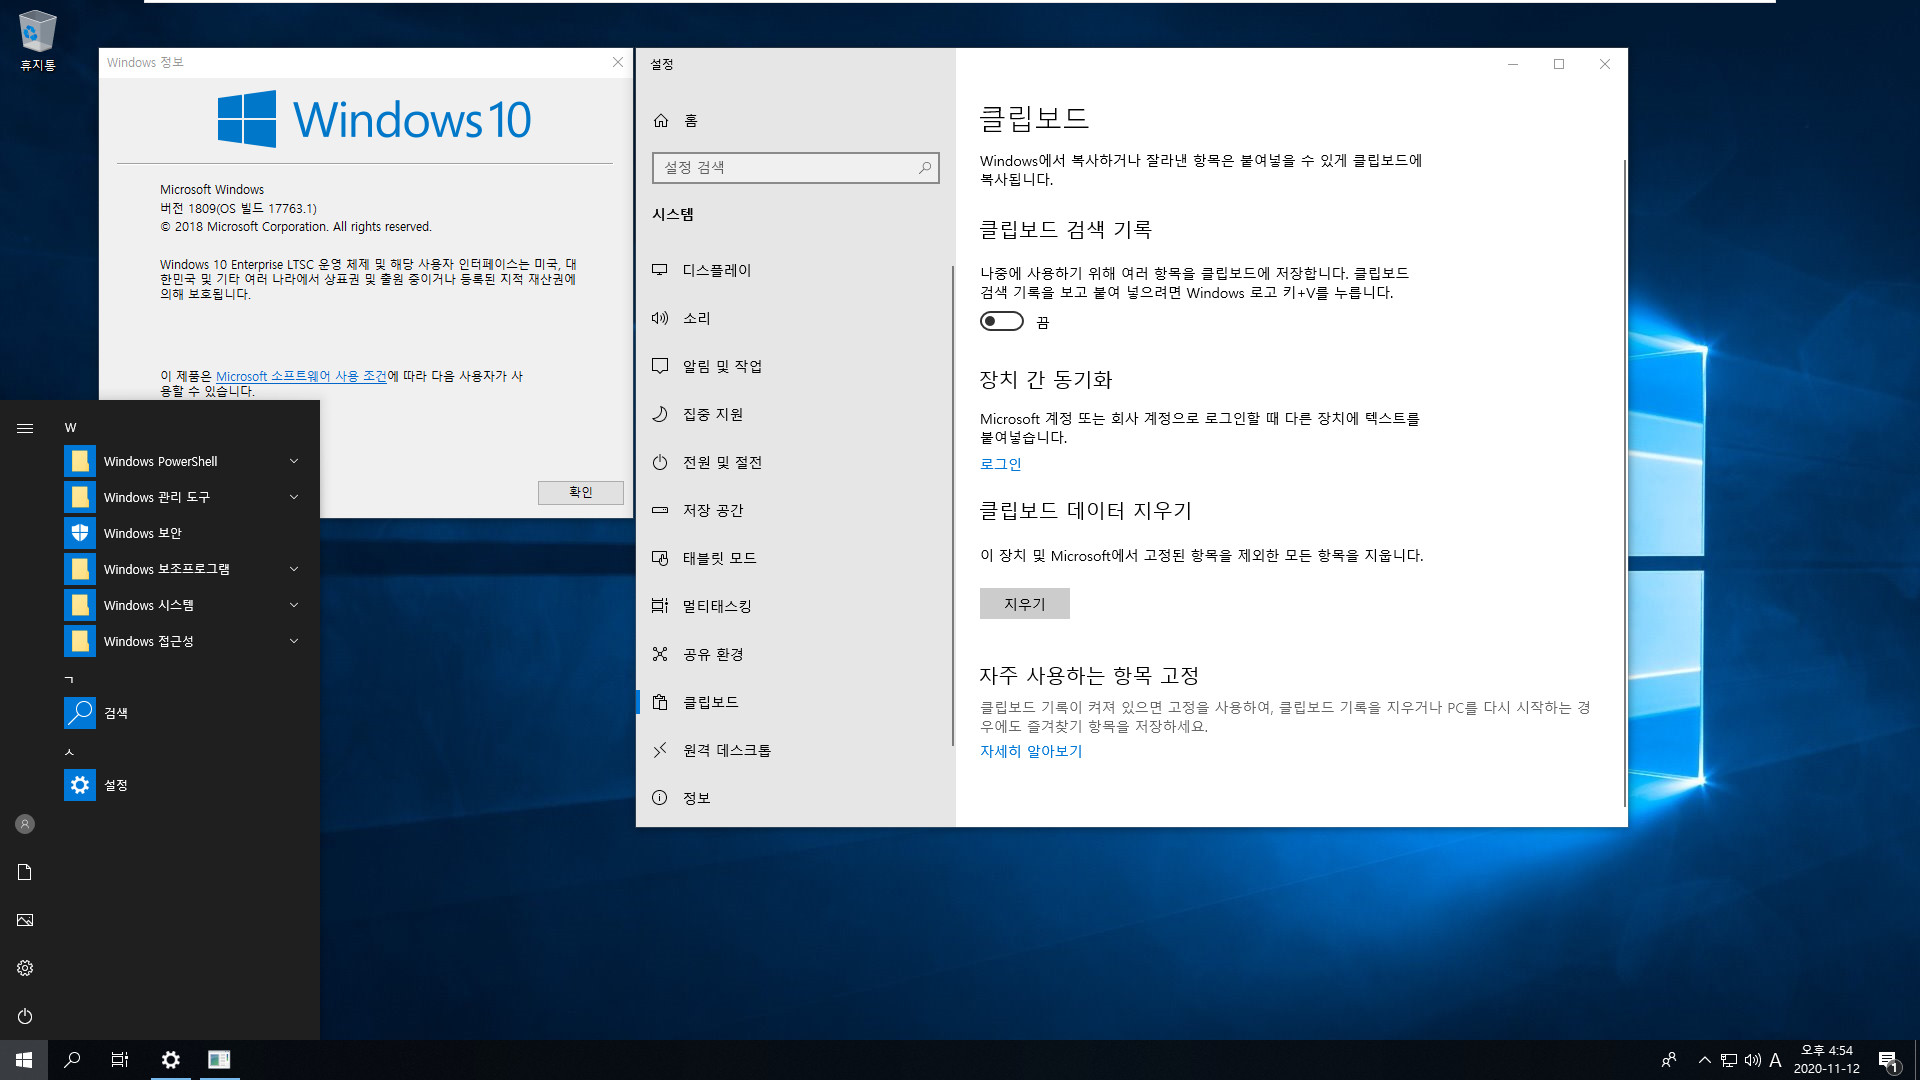 클립보드 히스토리 기능 [윈도우 키 + V] - Windows 10 버전 1809 부터 LTSC도 됩니다 2020-11-12_165437.jpg